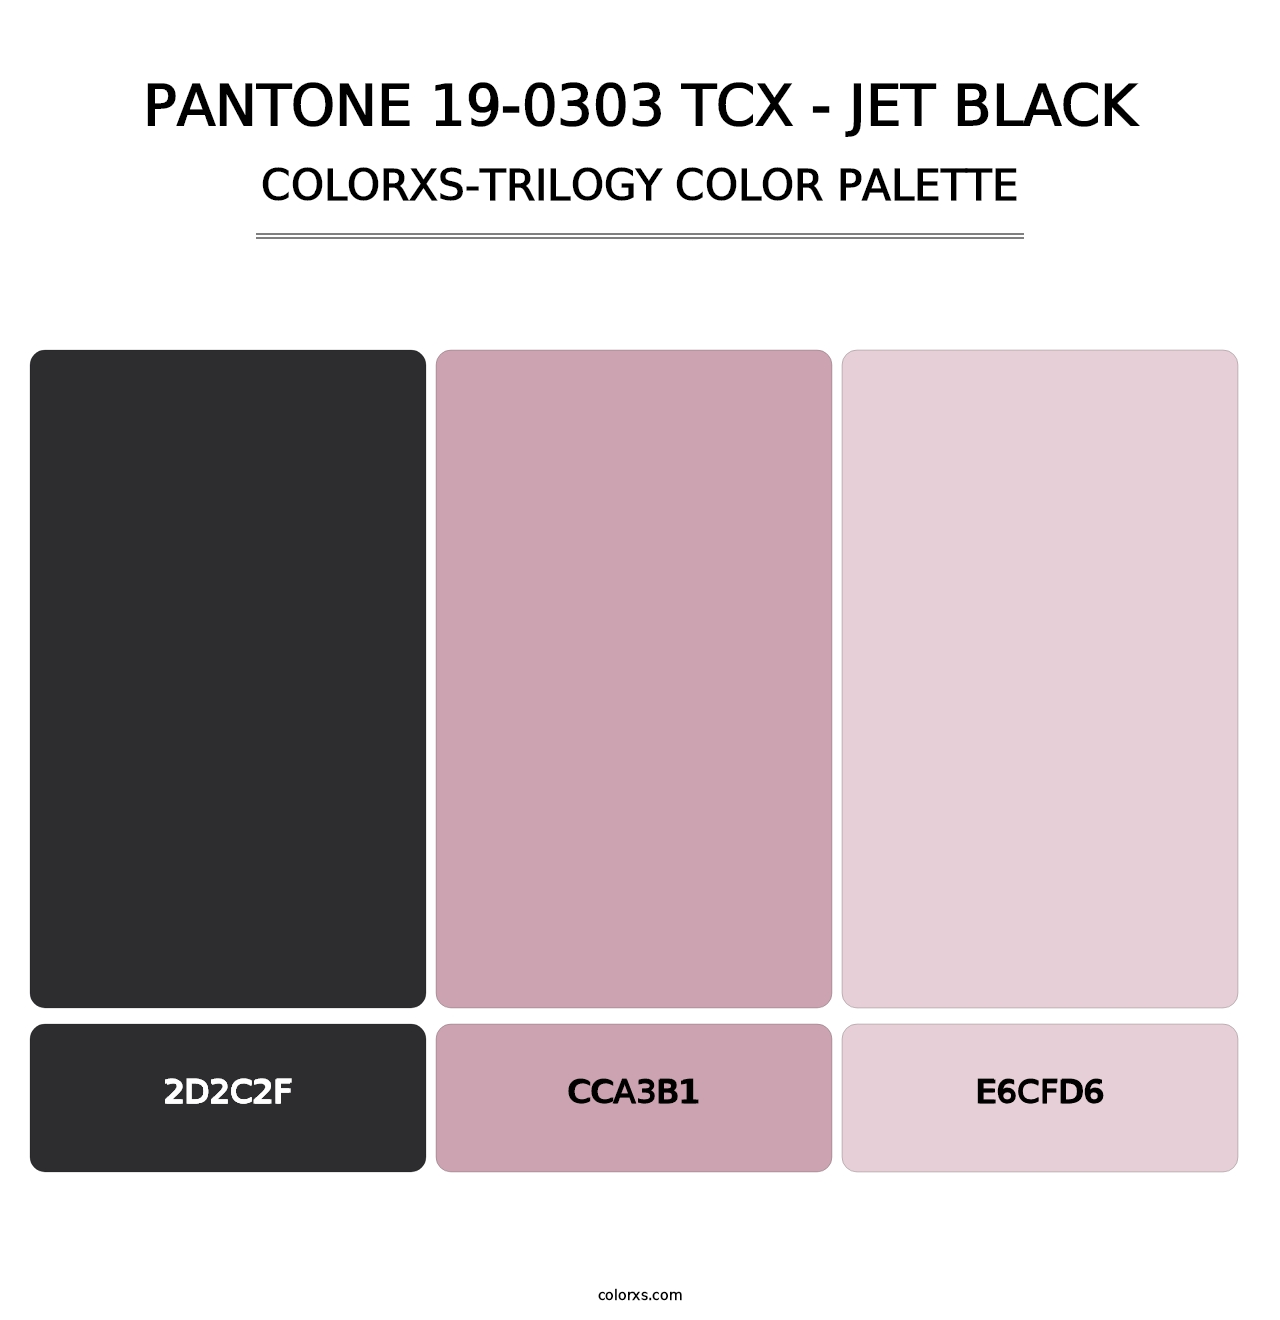 PANTONE 19-0303 TCX - Jet Black - Colorxs Trilogy Palette